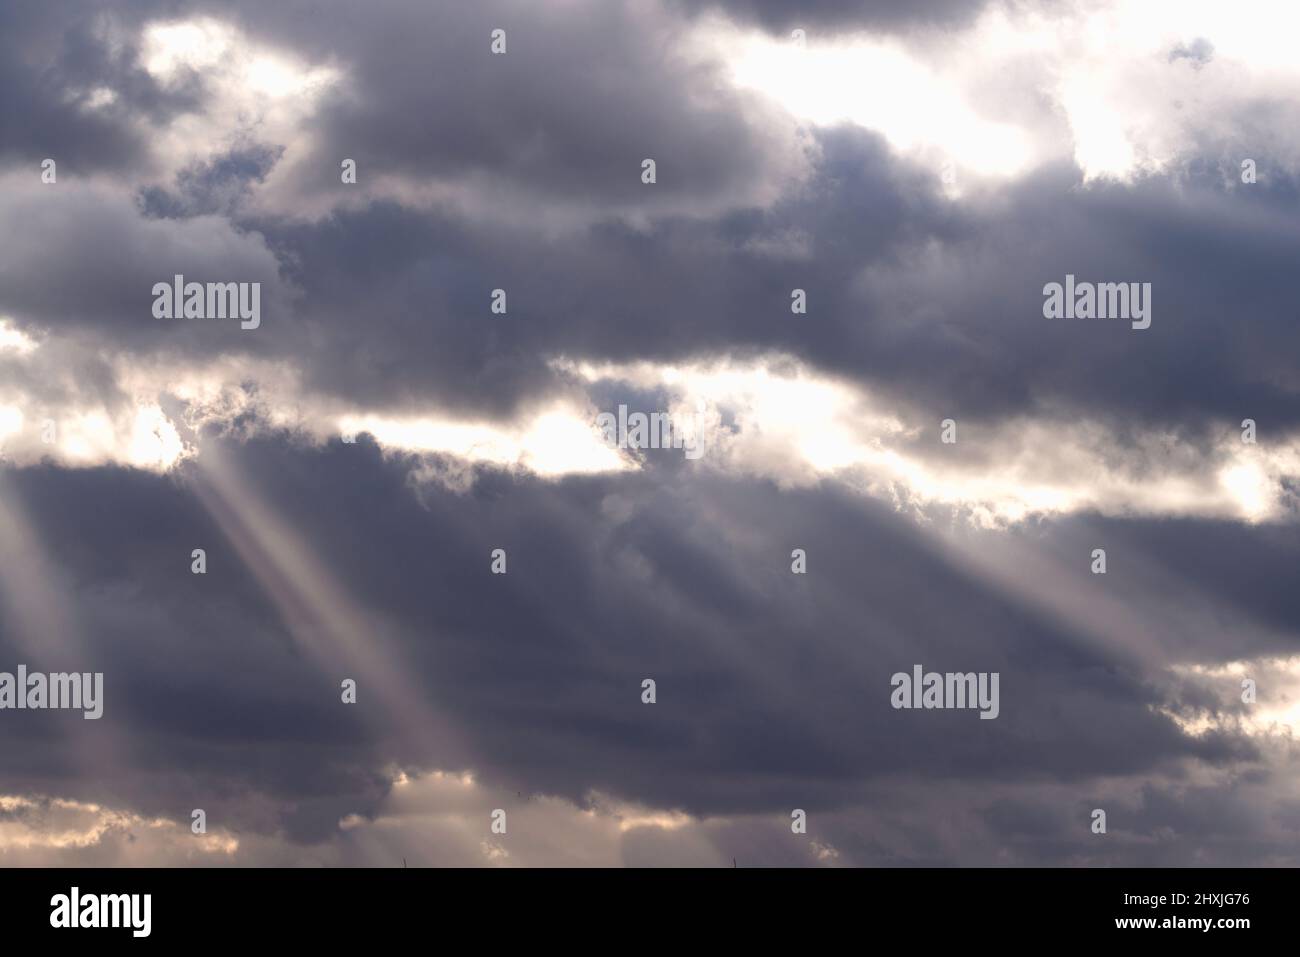 Il cielo è coperto da nuvole scure. C'è un divario nelle nuvole attraverso cui la luce del sole penetra creando nubi pittoresche. Foto Stock